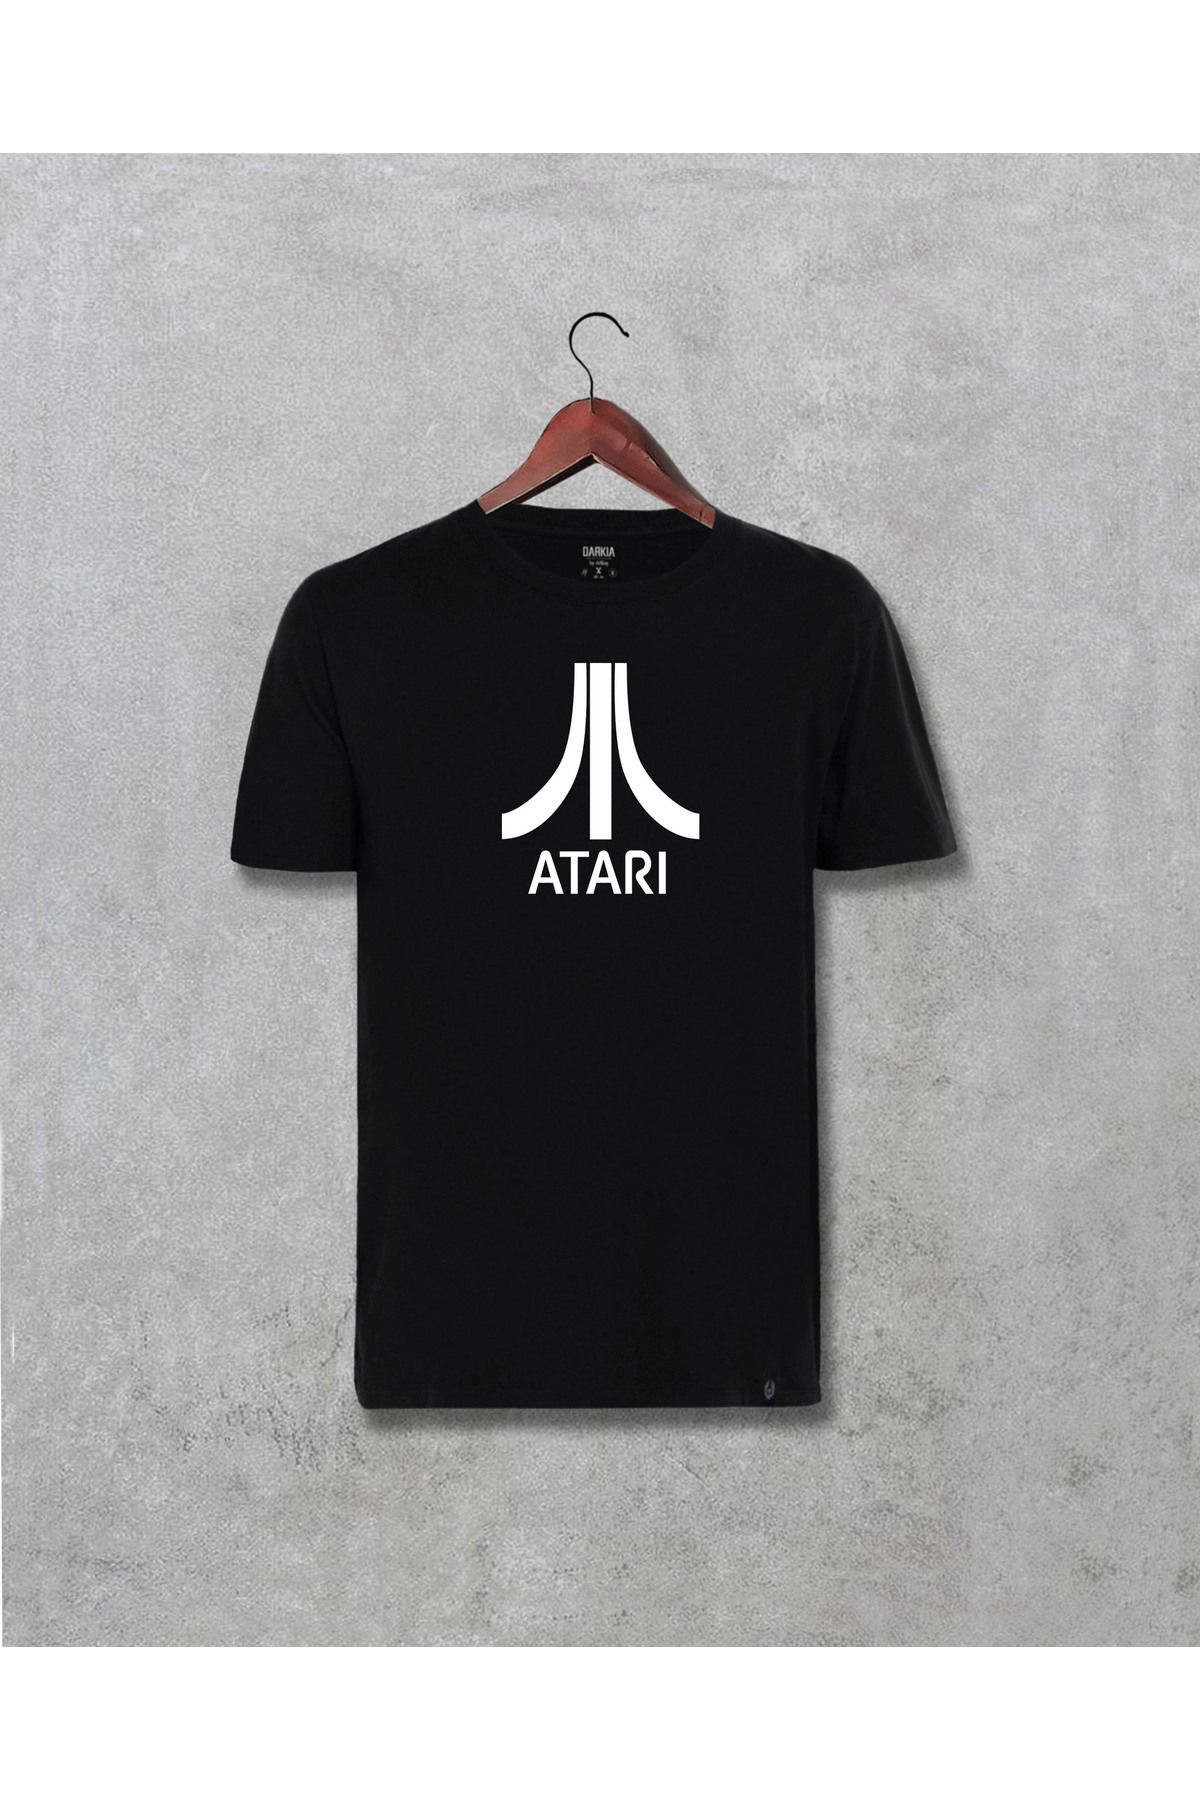 ZAYGA TEXTİLE Atari Logo Tasarım Baskılı Unisex Tişört